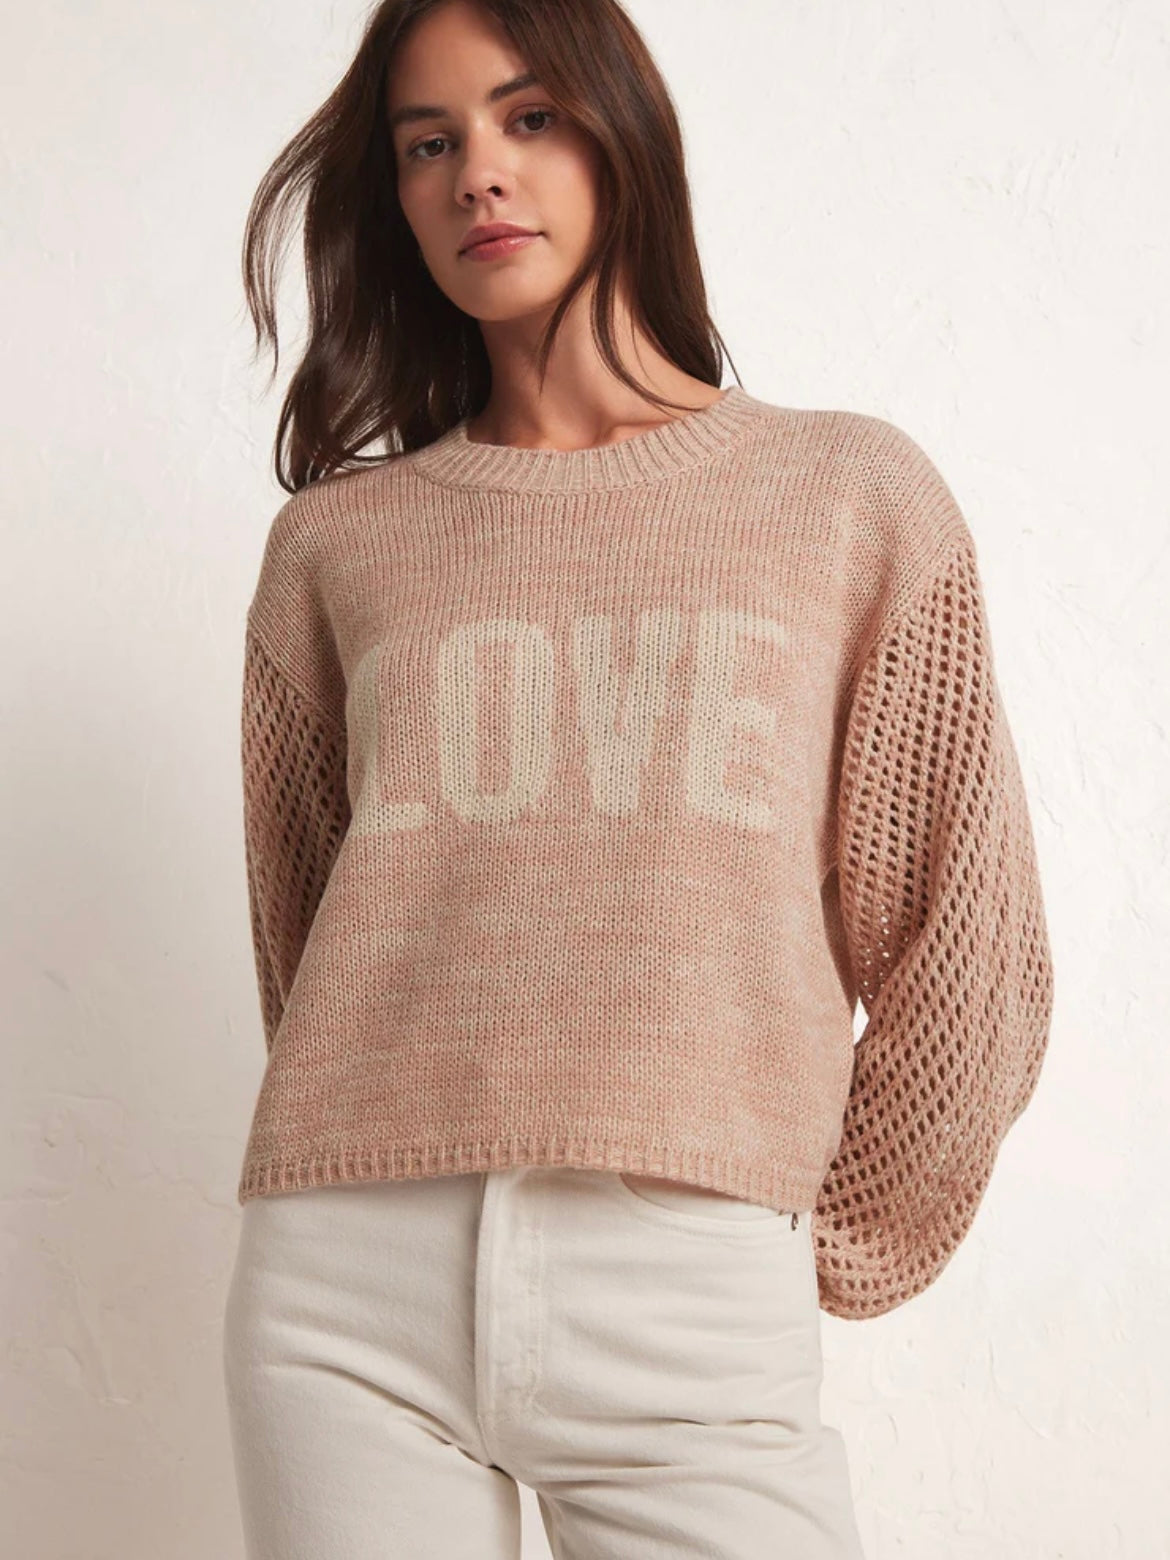 ZSupply Blushing Love Sweatshirt